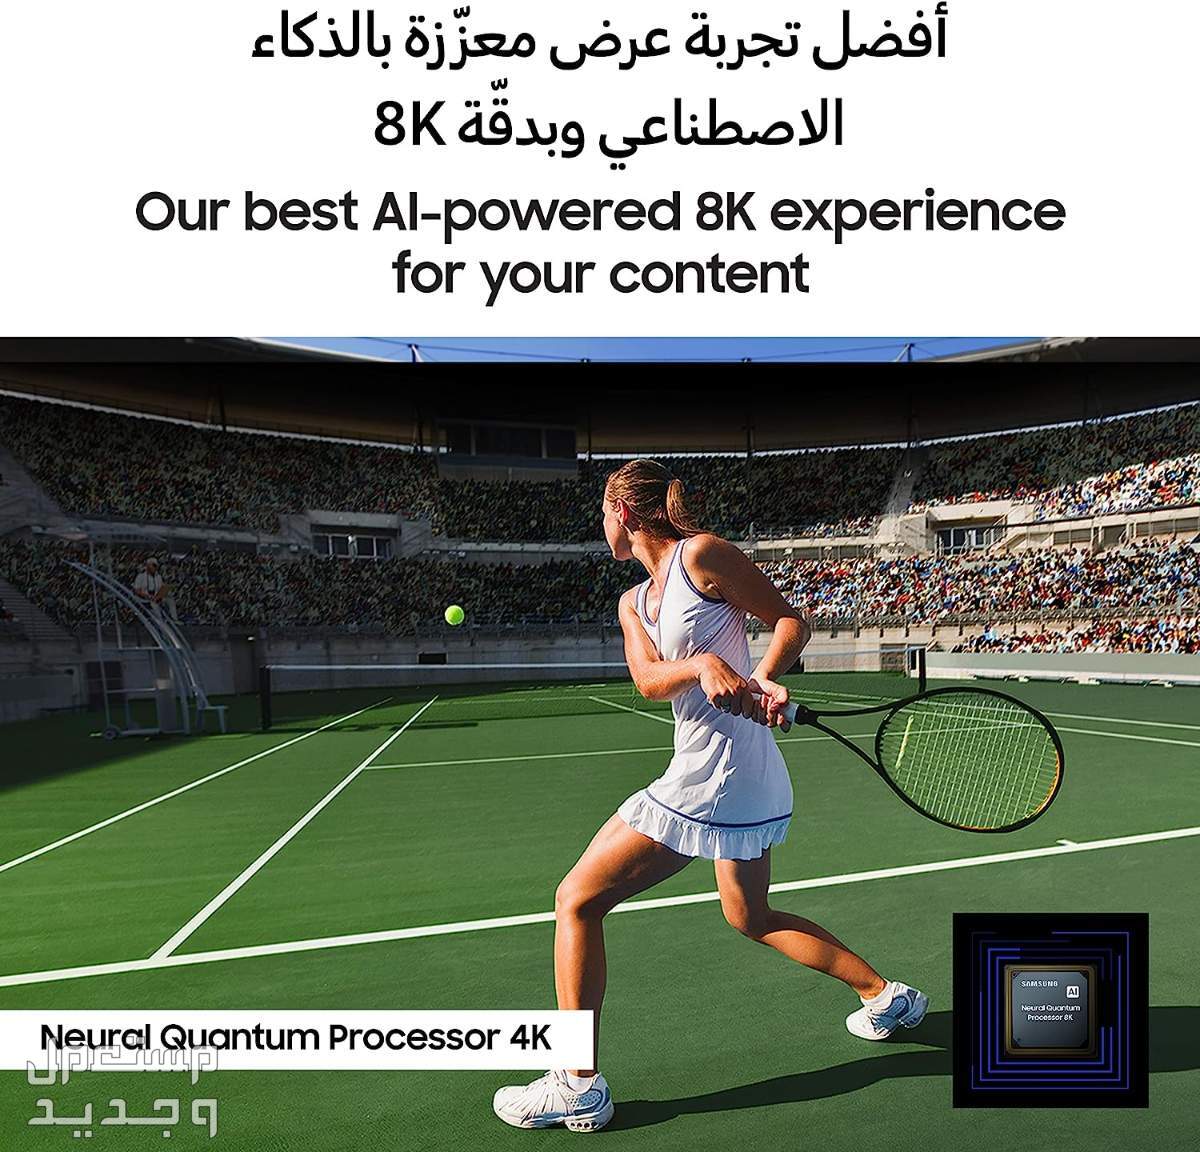 سعر شاشة سامسونج 75 بوصة وهذه مميزاتها في الأردن شاشة سامسونج 75 بوصة بتقنية الـ 8k افضل تجربة عرض بالذكاء الاصطناعي